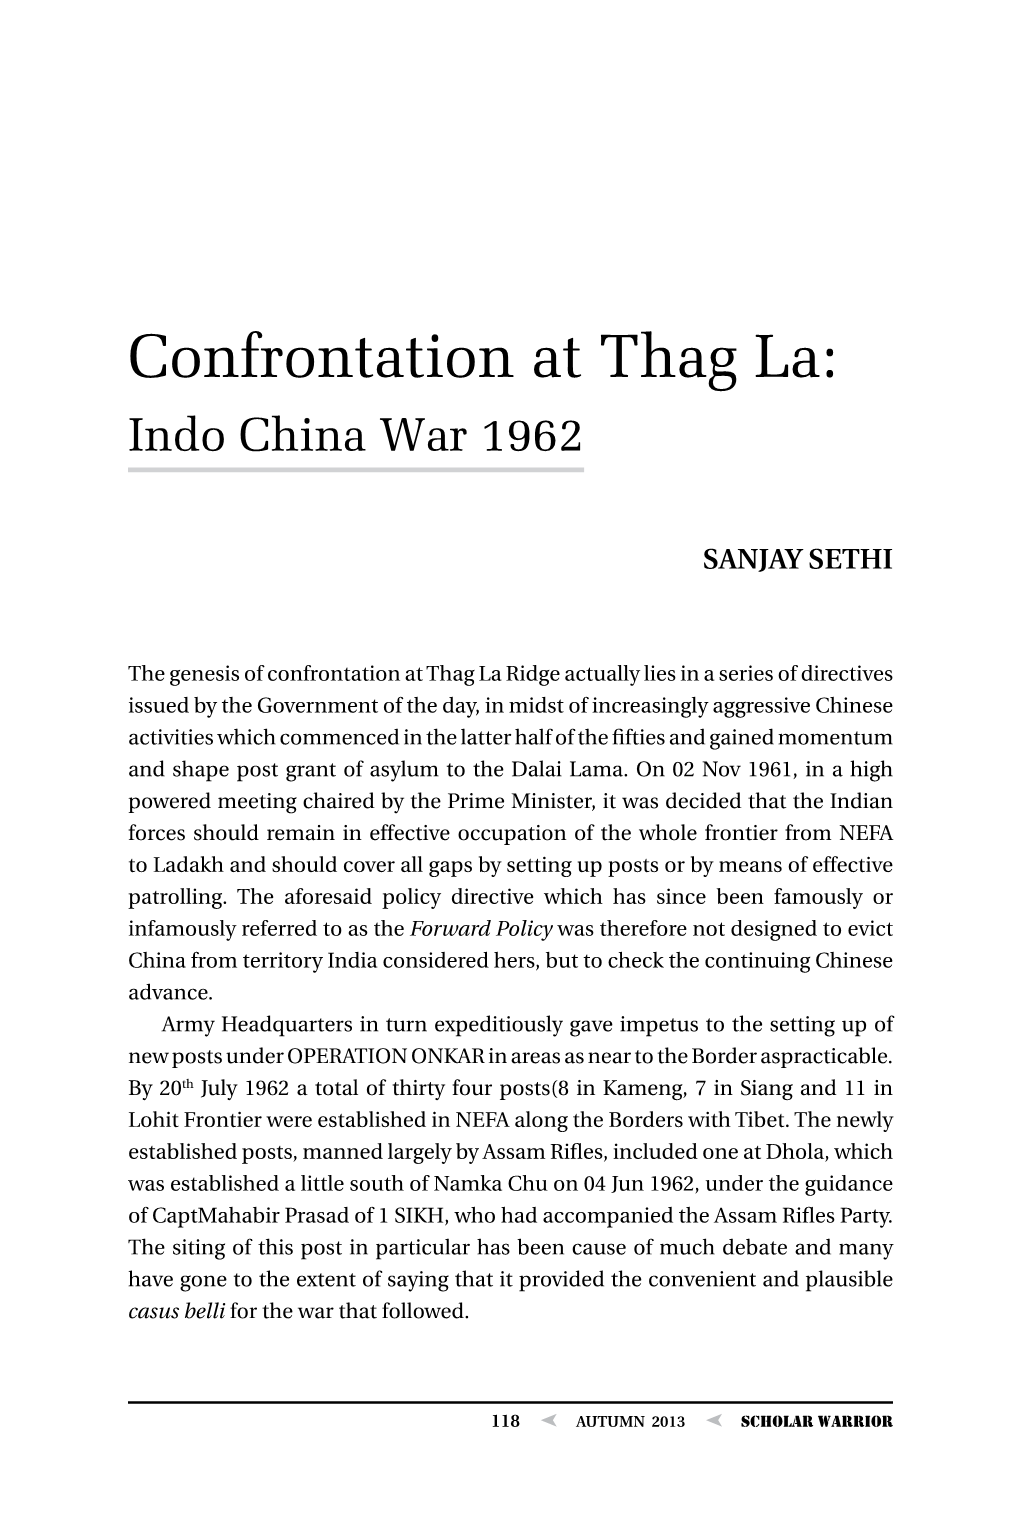 Confrontation at Thag La: Indo China War 1962